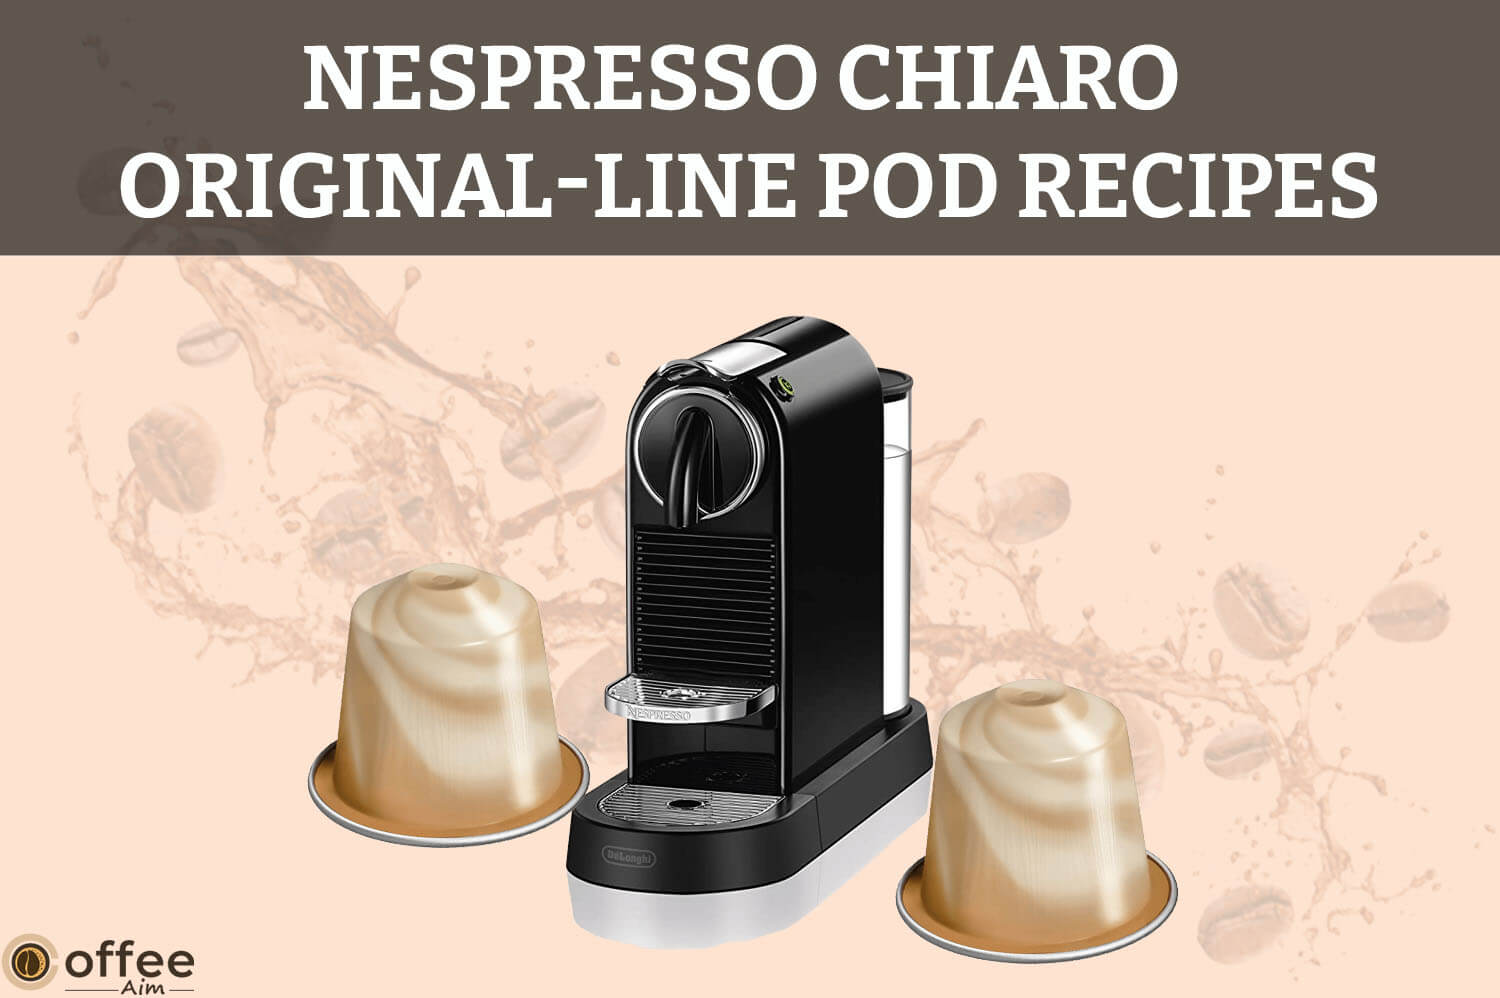 Featured image for the article "Nespresso Chiaro Original-Line Pod Recipes"